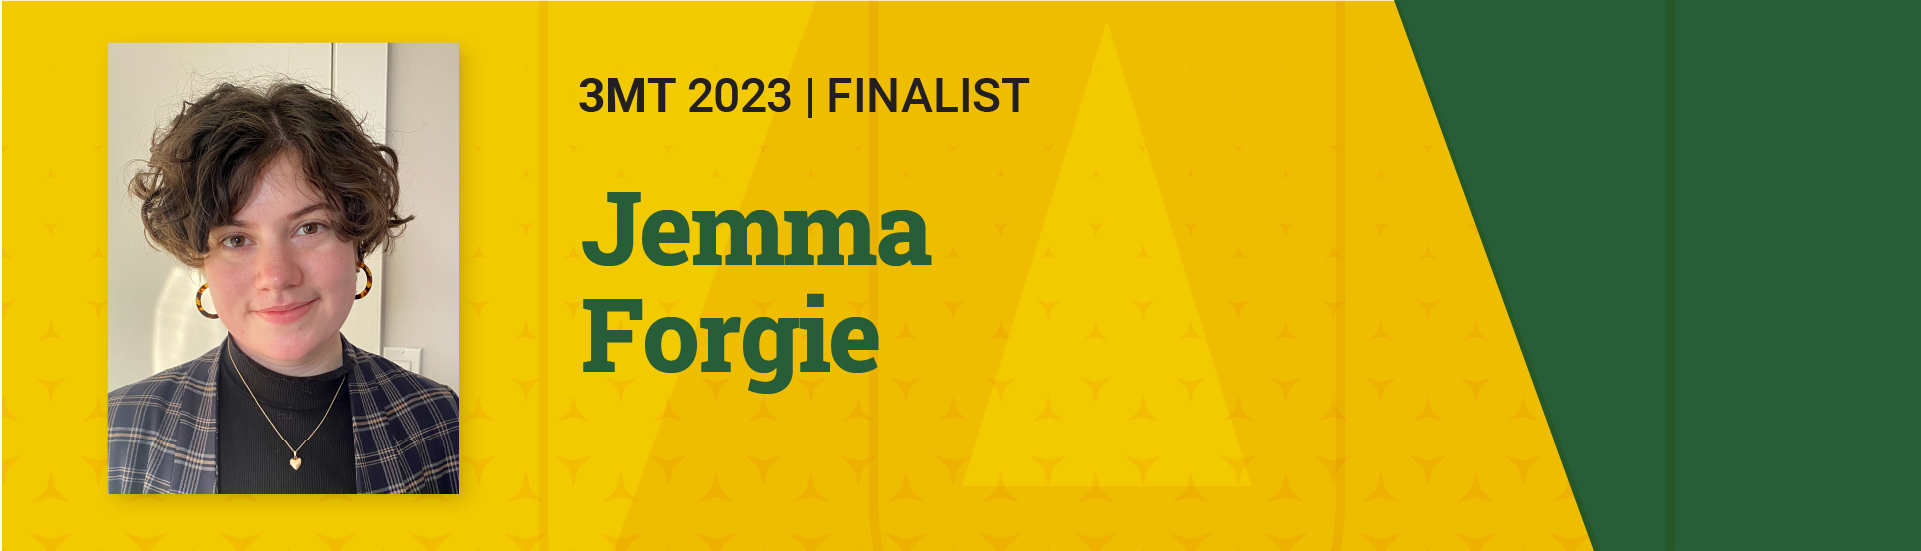 3MT 2023 Finalist  Jemma Forgie 